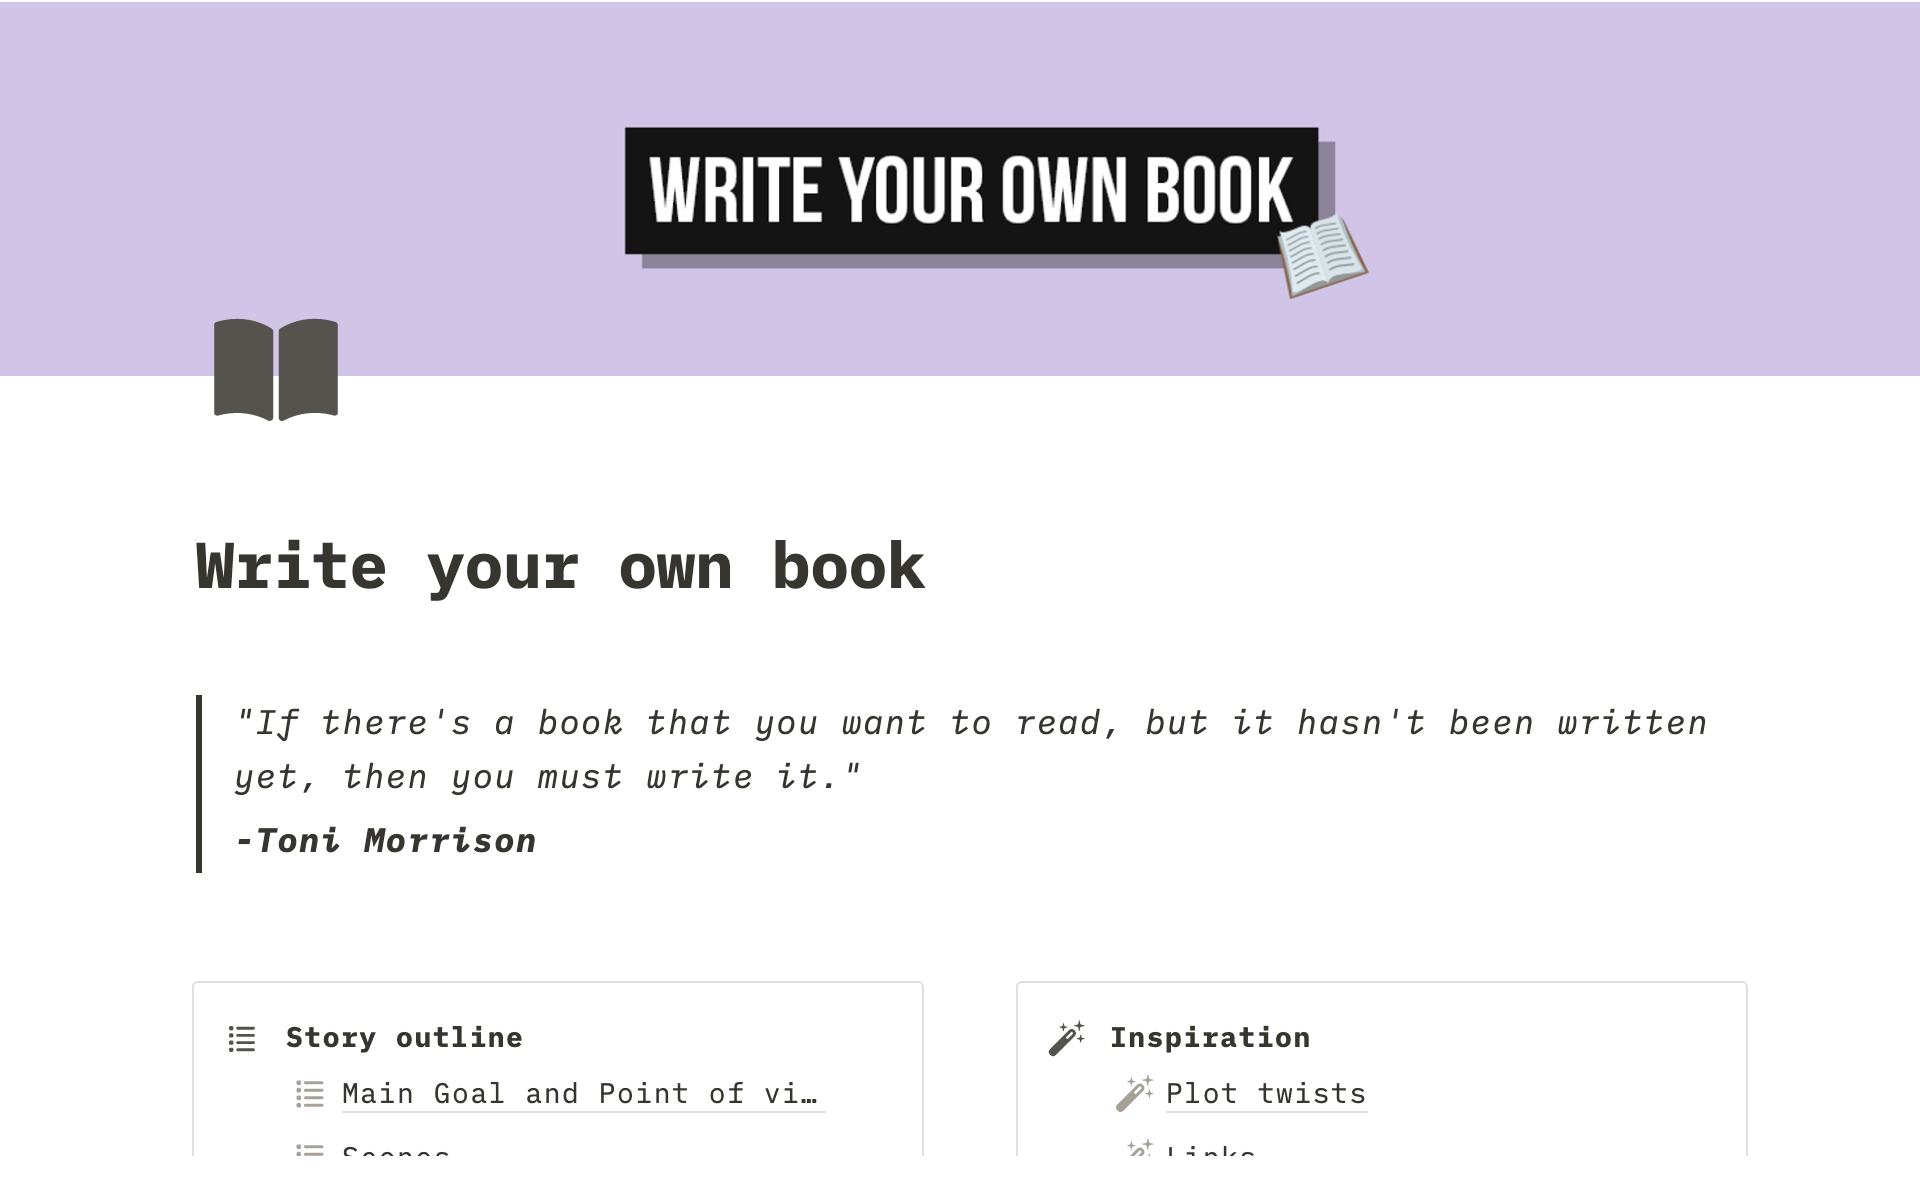 Uma prévia do modelo para Write your own book